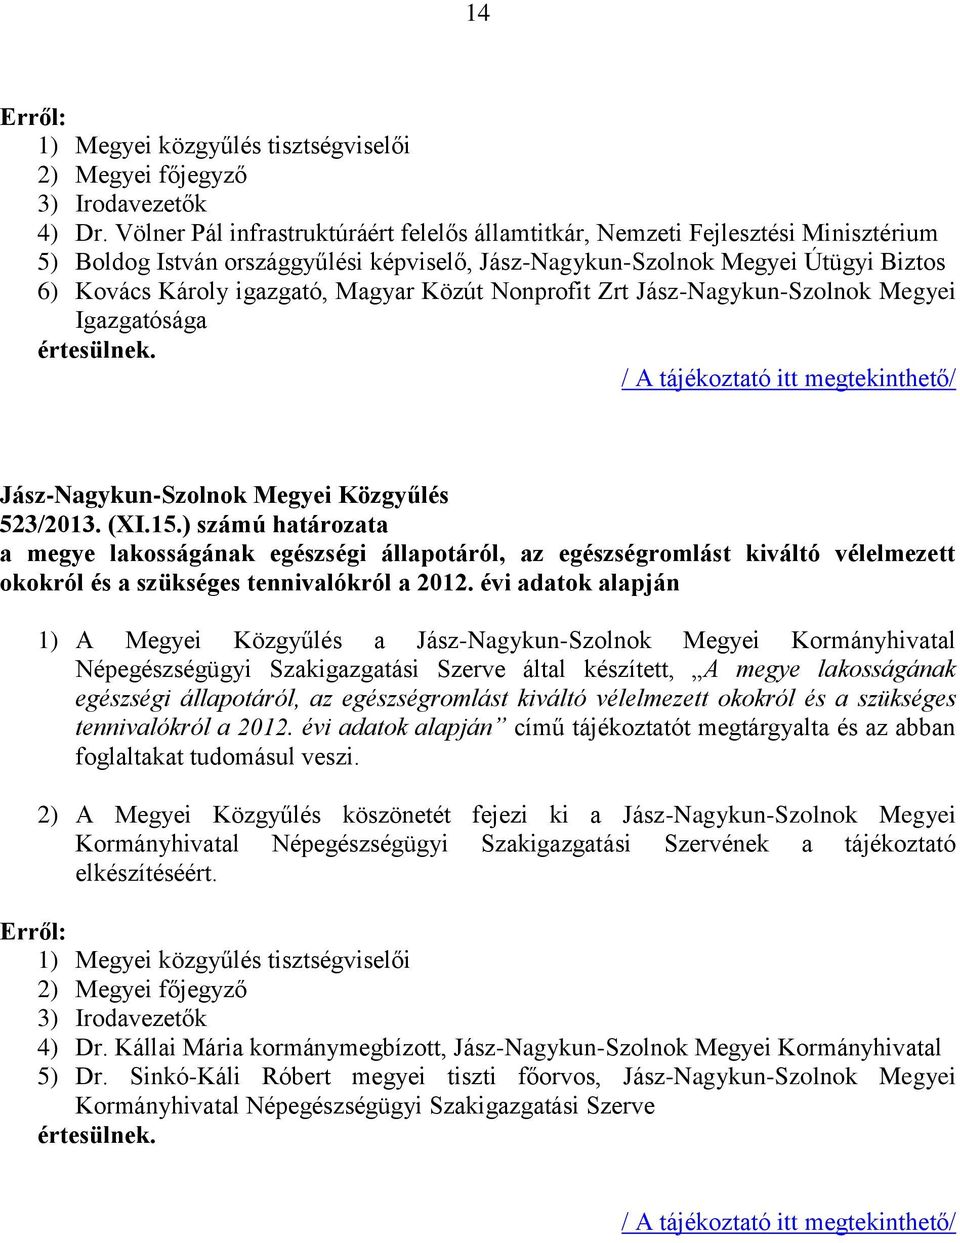 Magyar Közút Nonprofit Zrt Jász-Nagykun-Szolnok Megyei Igazgatósága / A tájékoztató itt megtekinthető/ 523/2013. (XI.15.